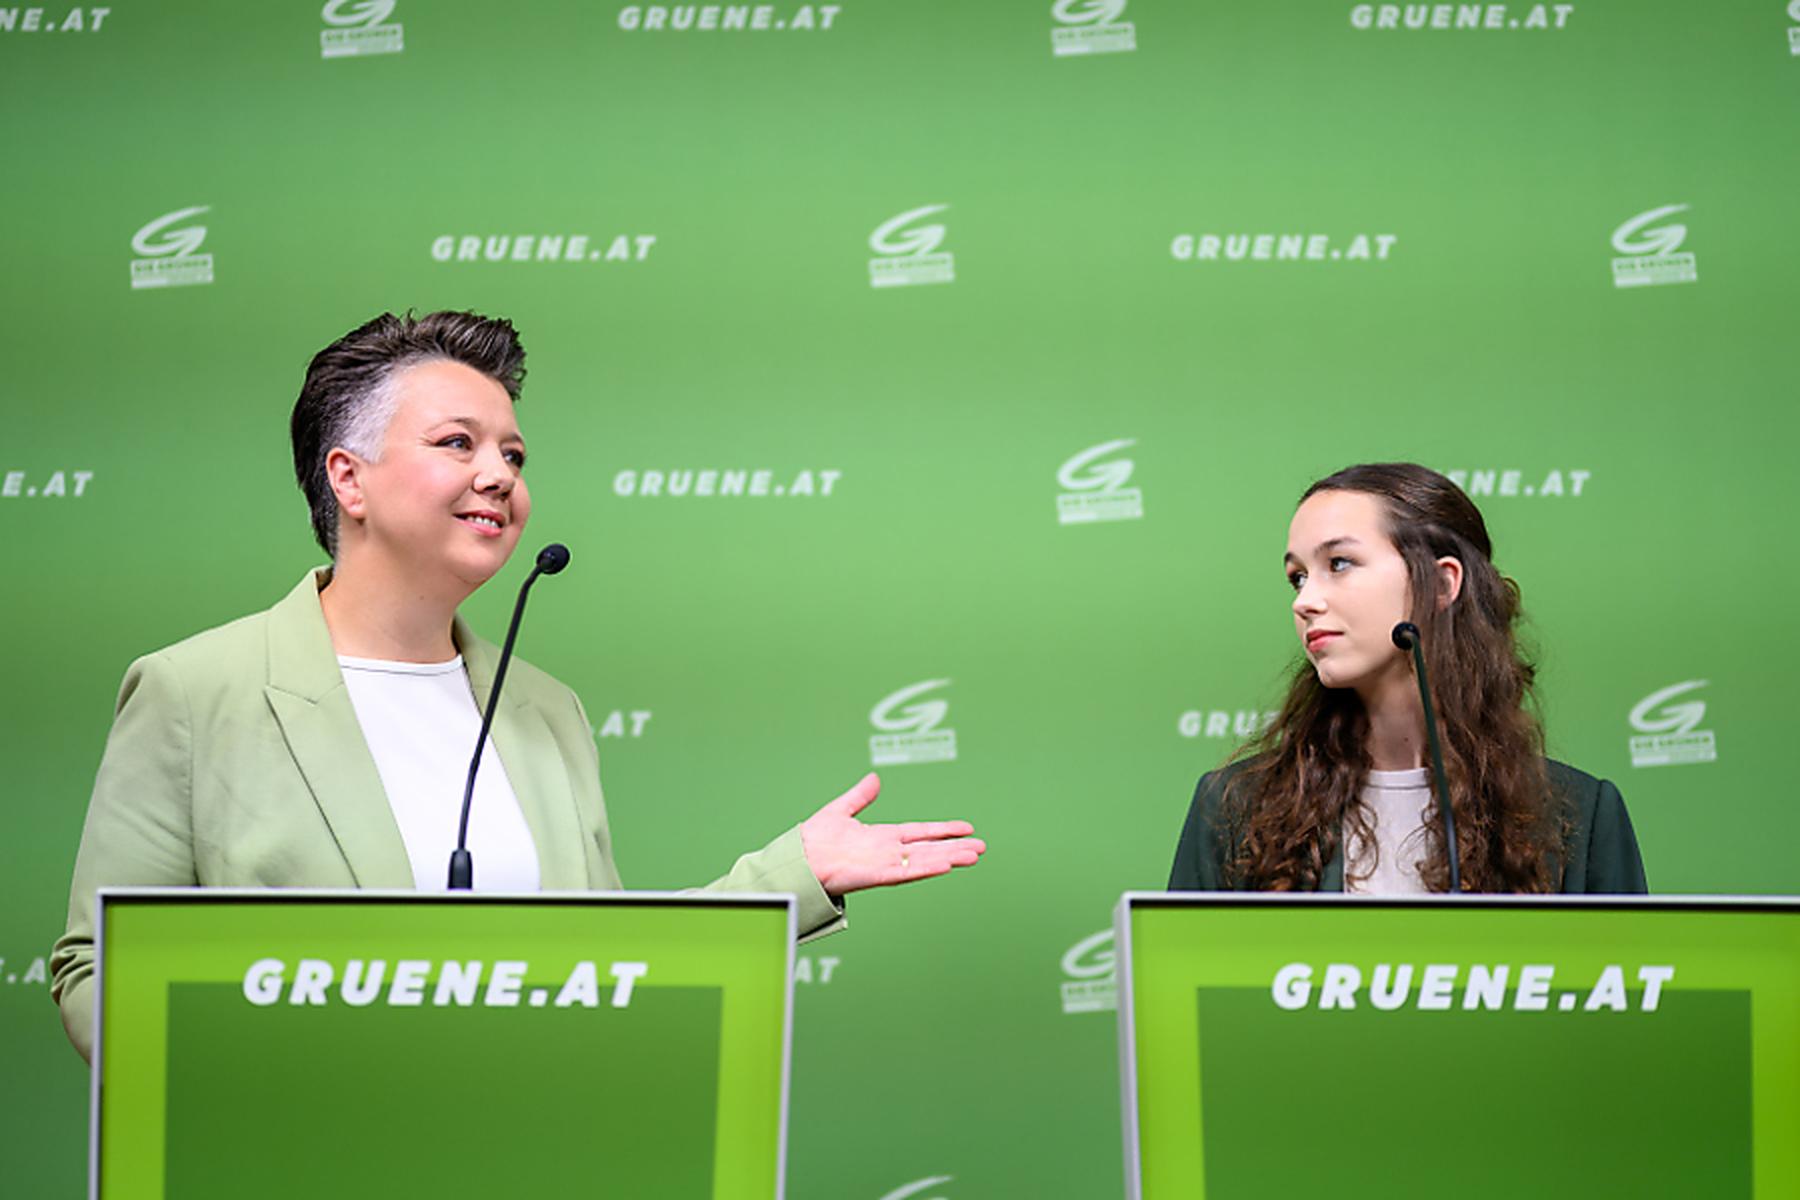 Wien: Schilling kontert Vorwürfen mit Grüner Parteimitgliedschaft